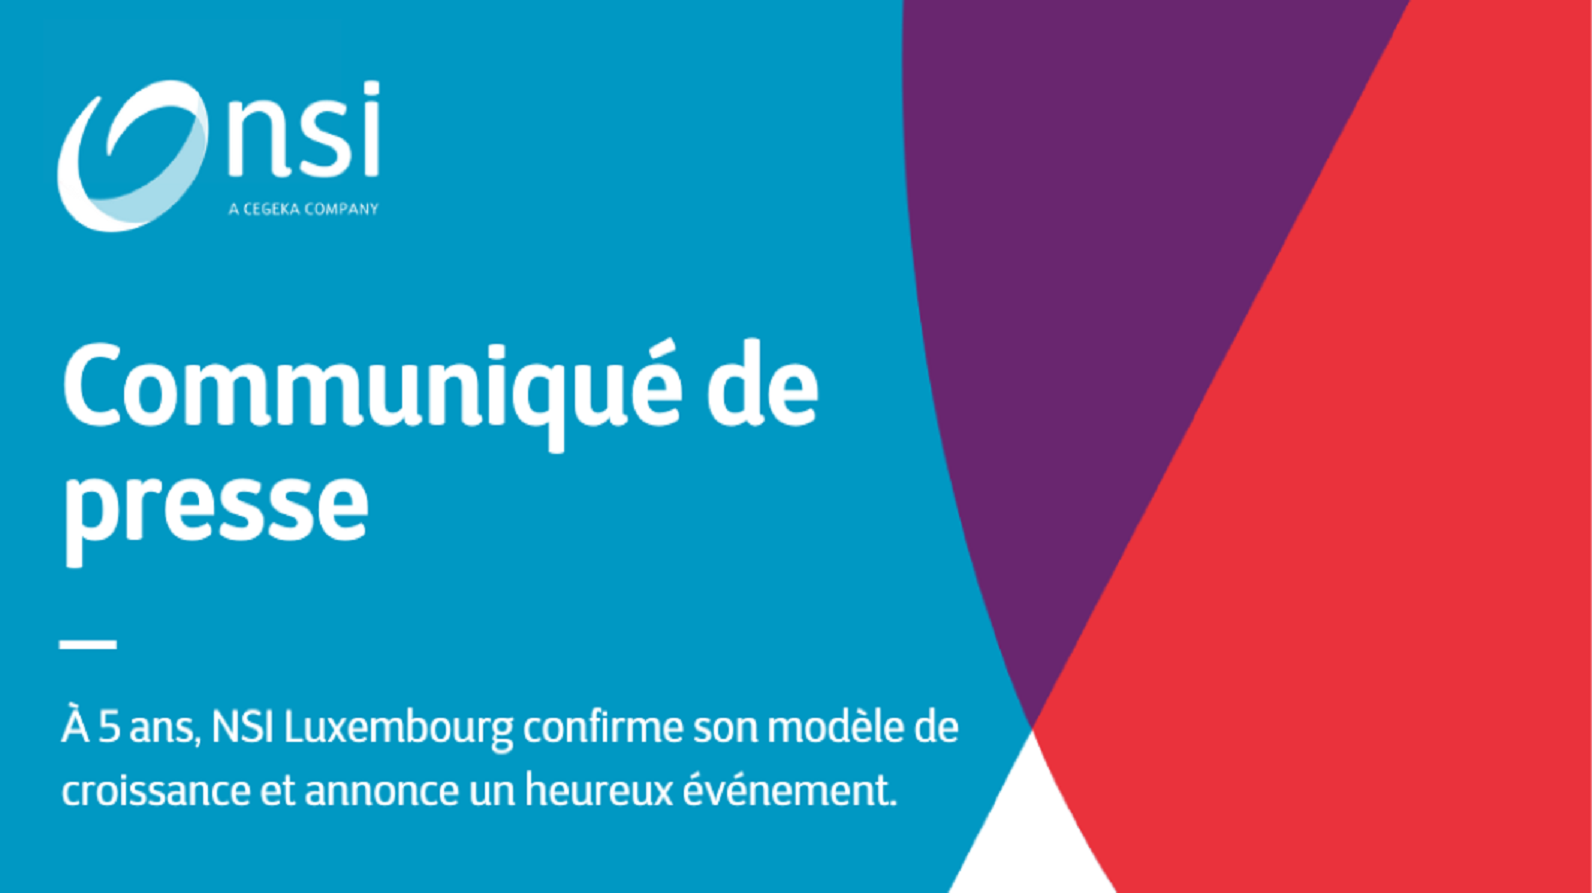 A 5 ans, NSI Luxembourg confirme son modèle de croissance et annonce un heureux événement